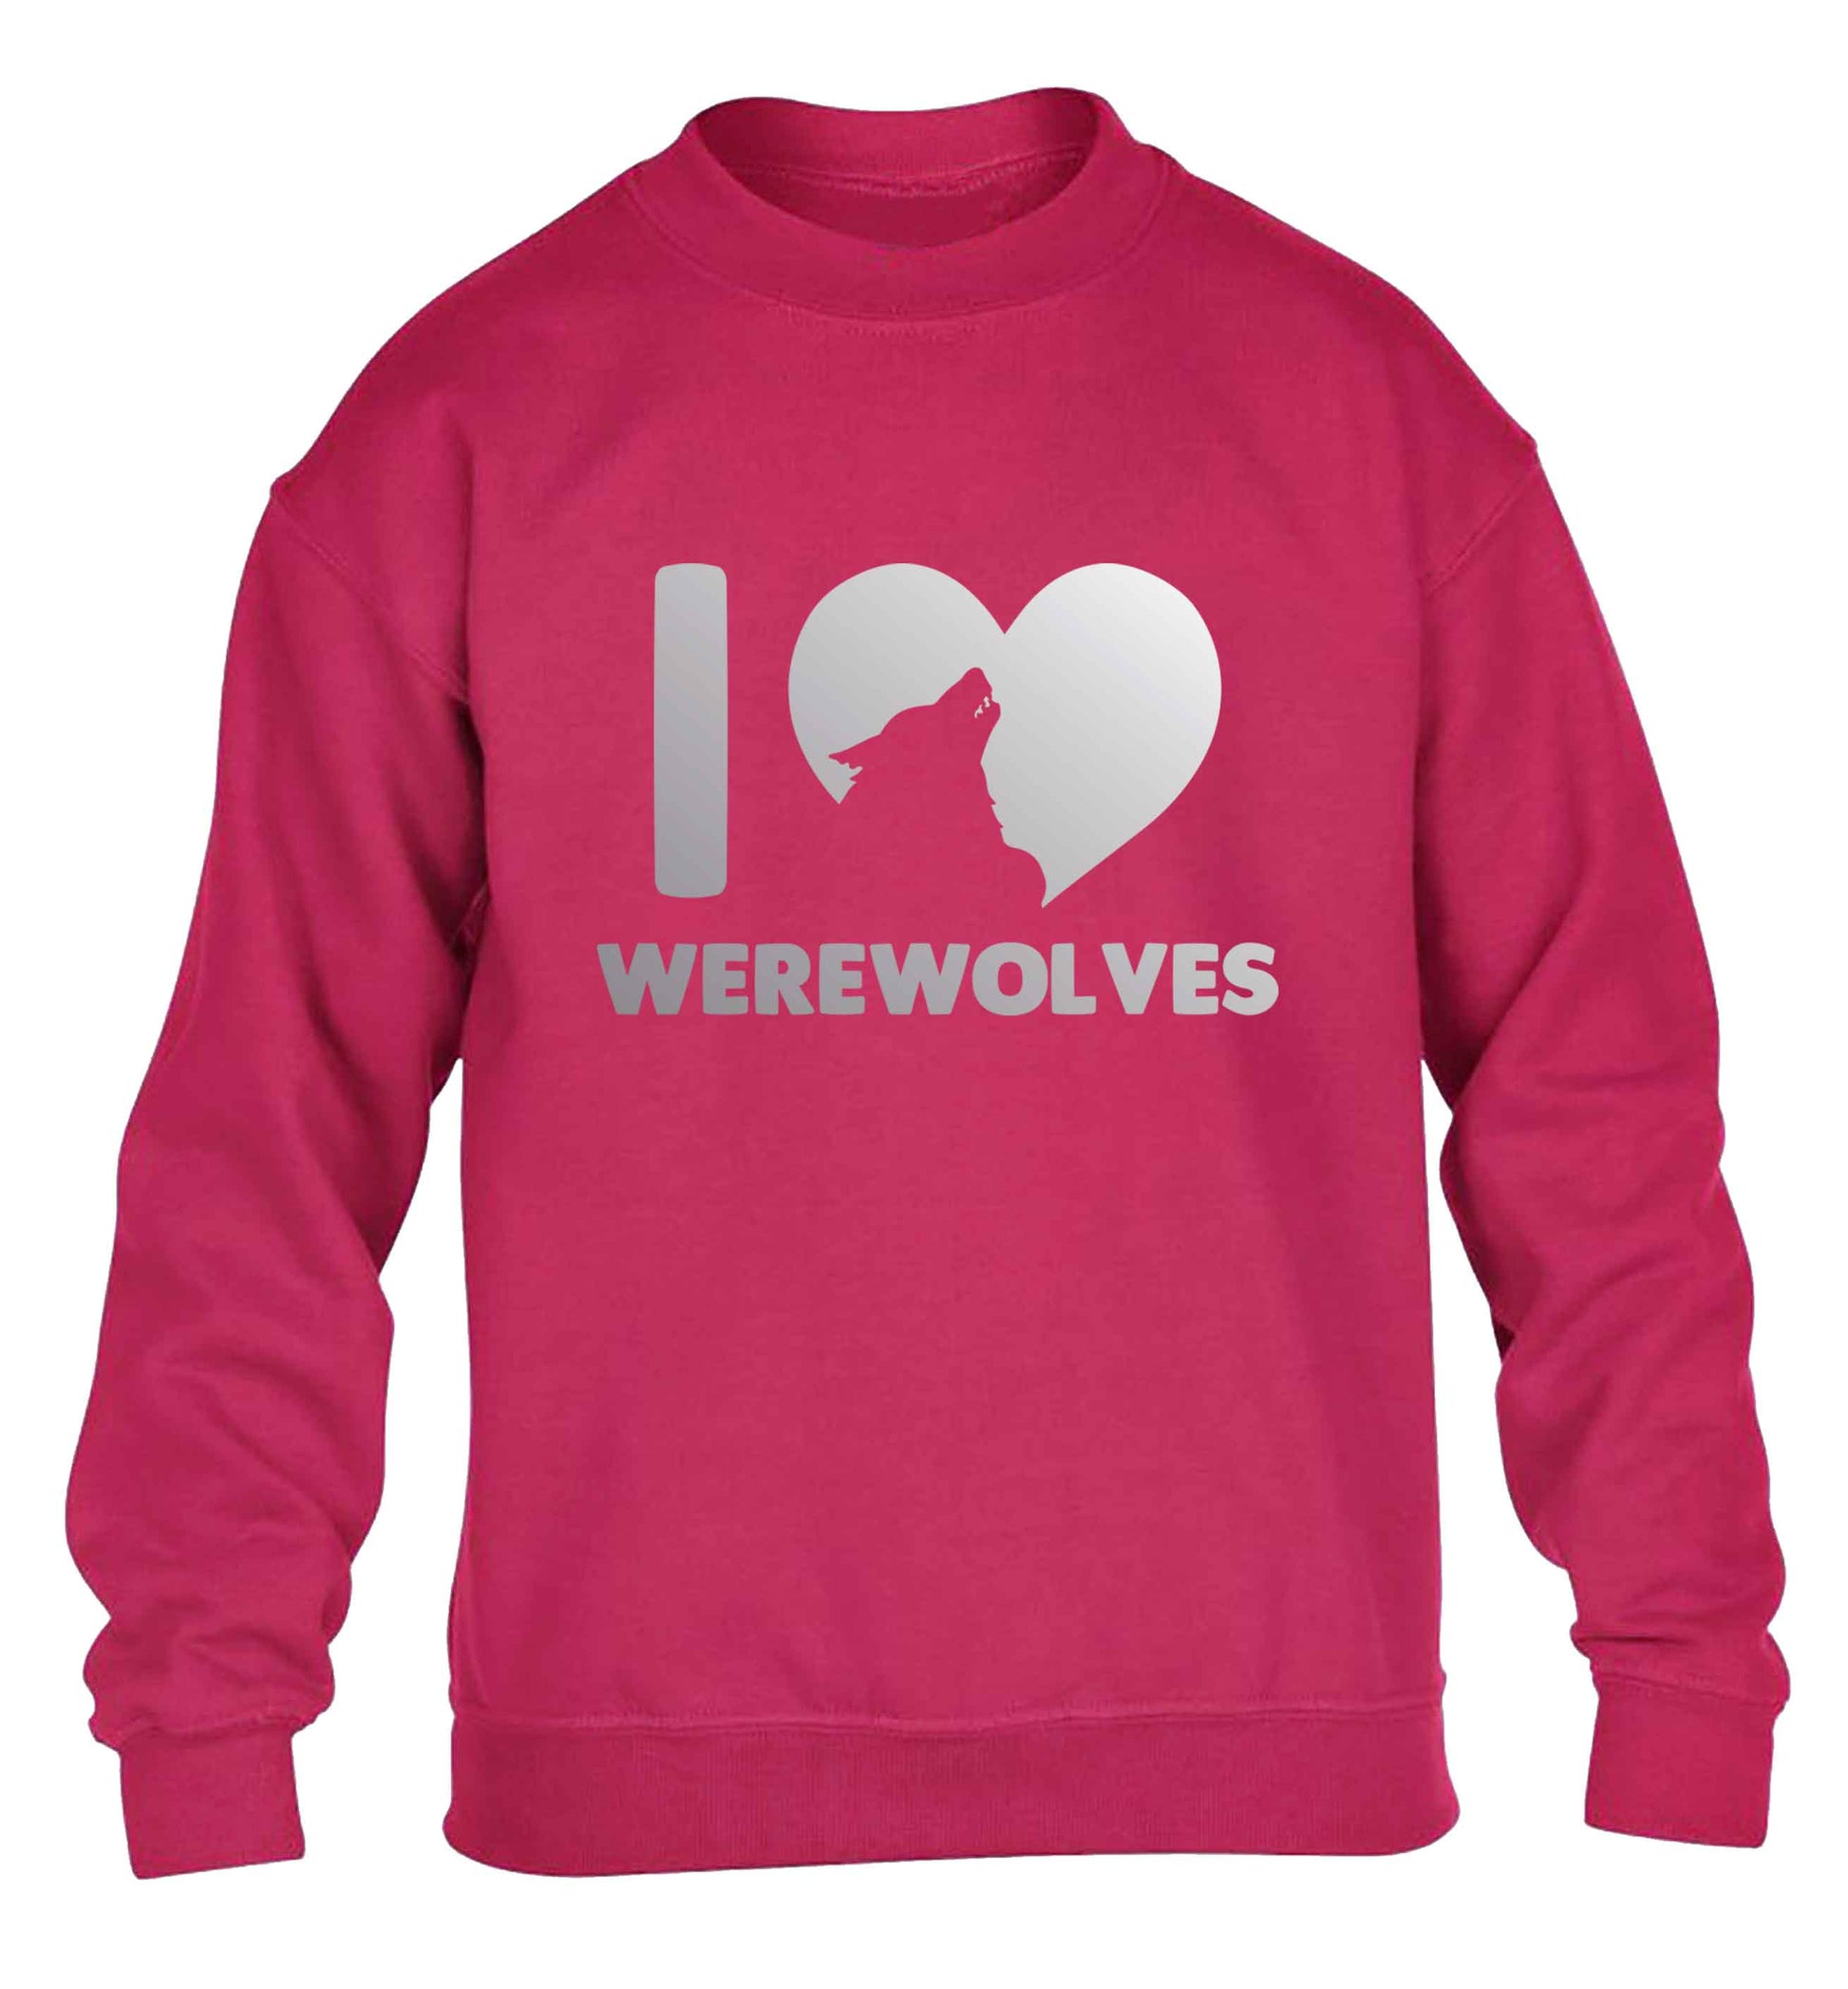 I love werewolves children's pink sweater 12-13 Years